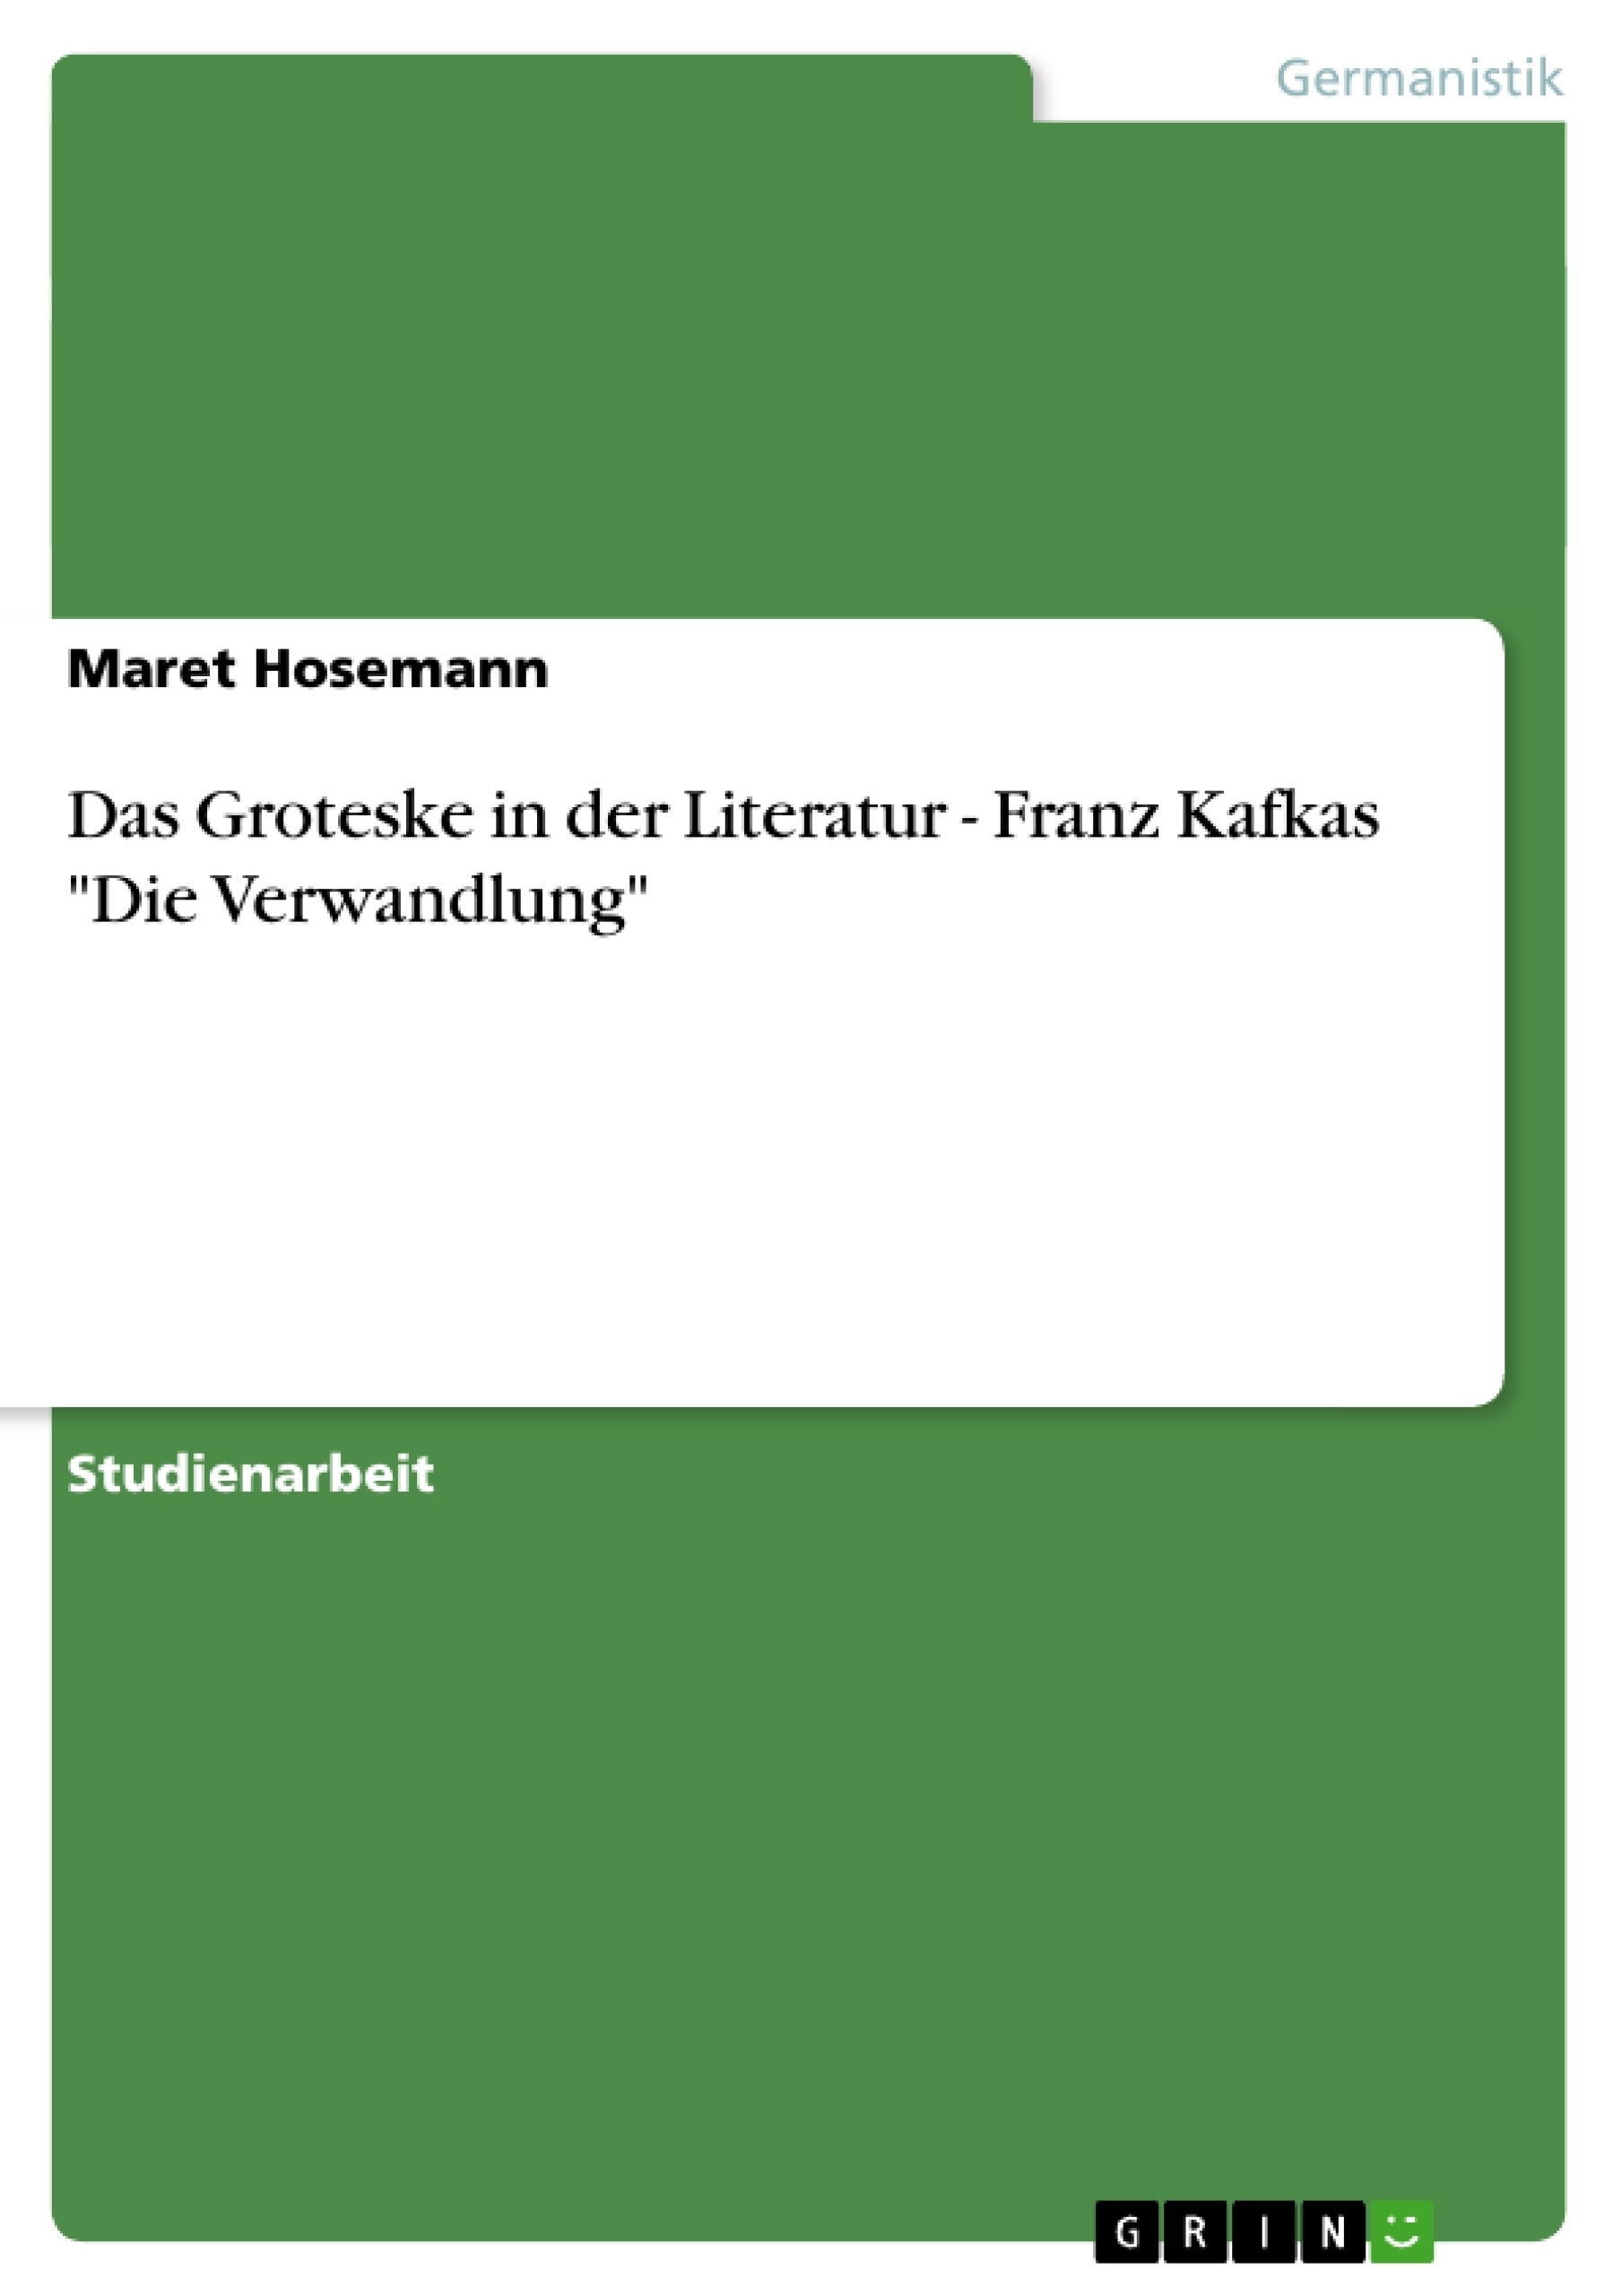 Title: Das Groteske in der Literatur - Franz Kafkas "Die Verwandlung"